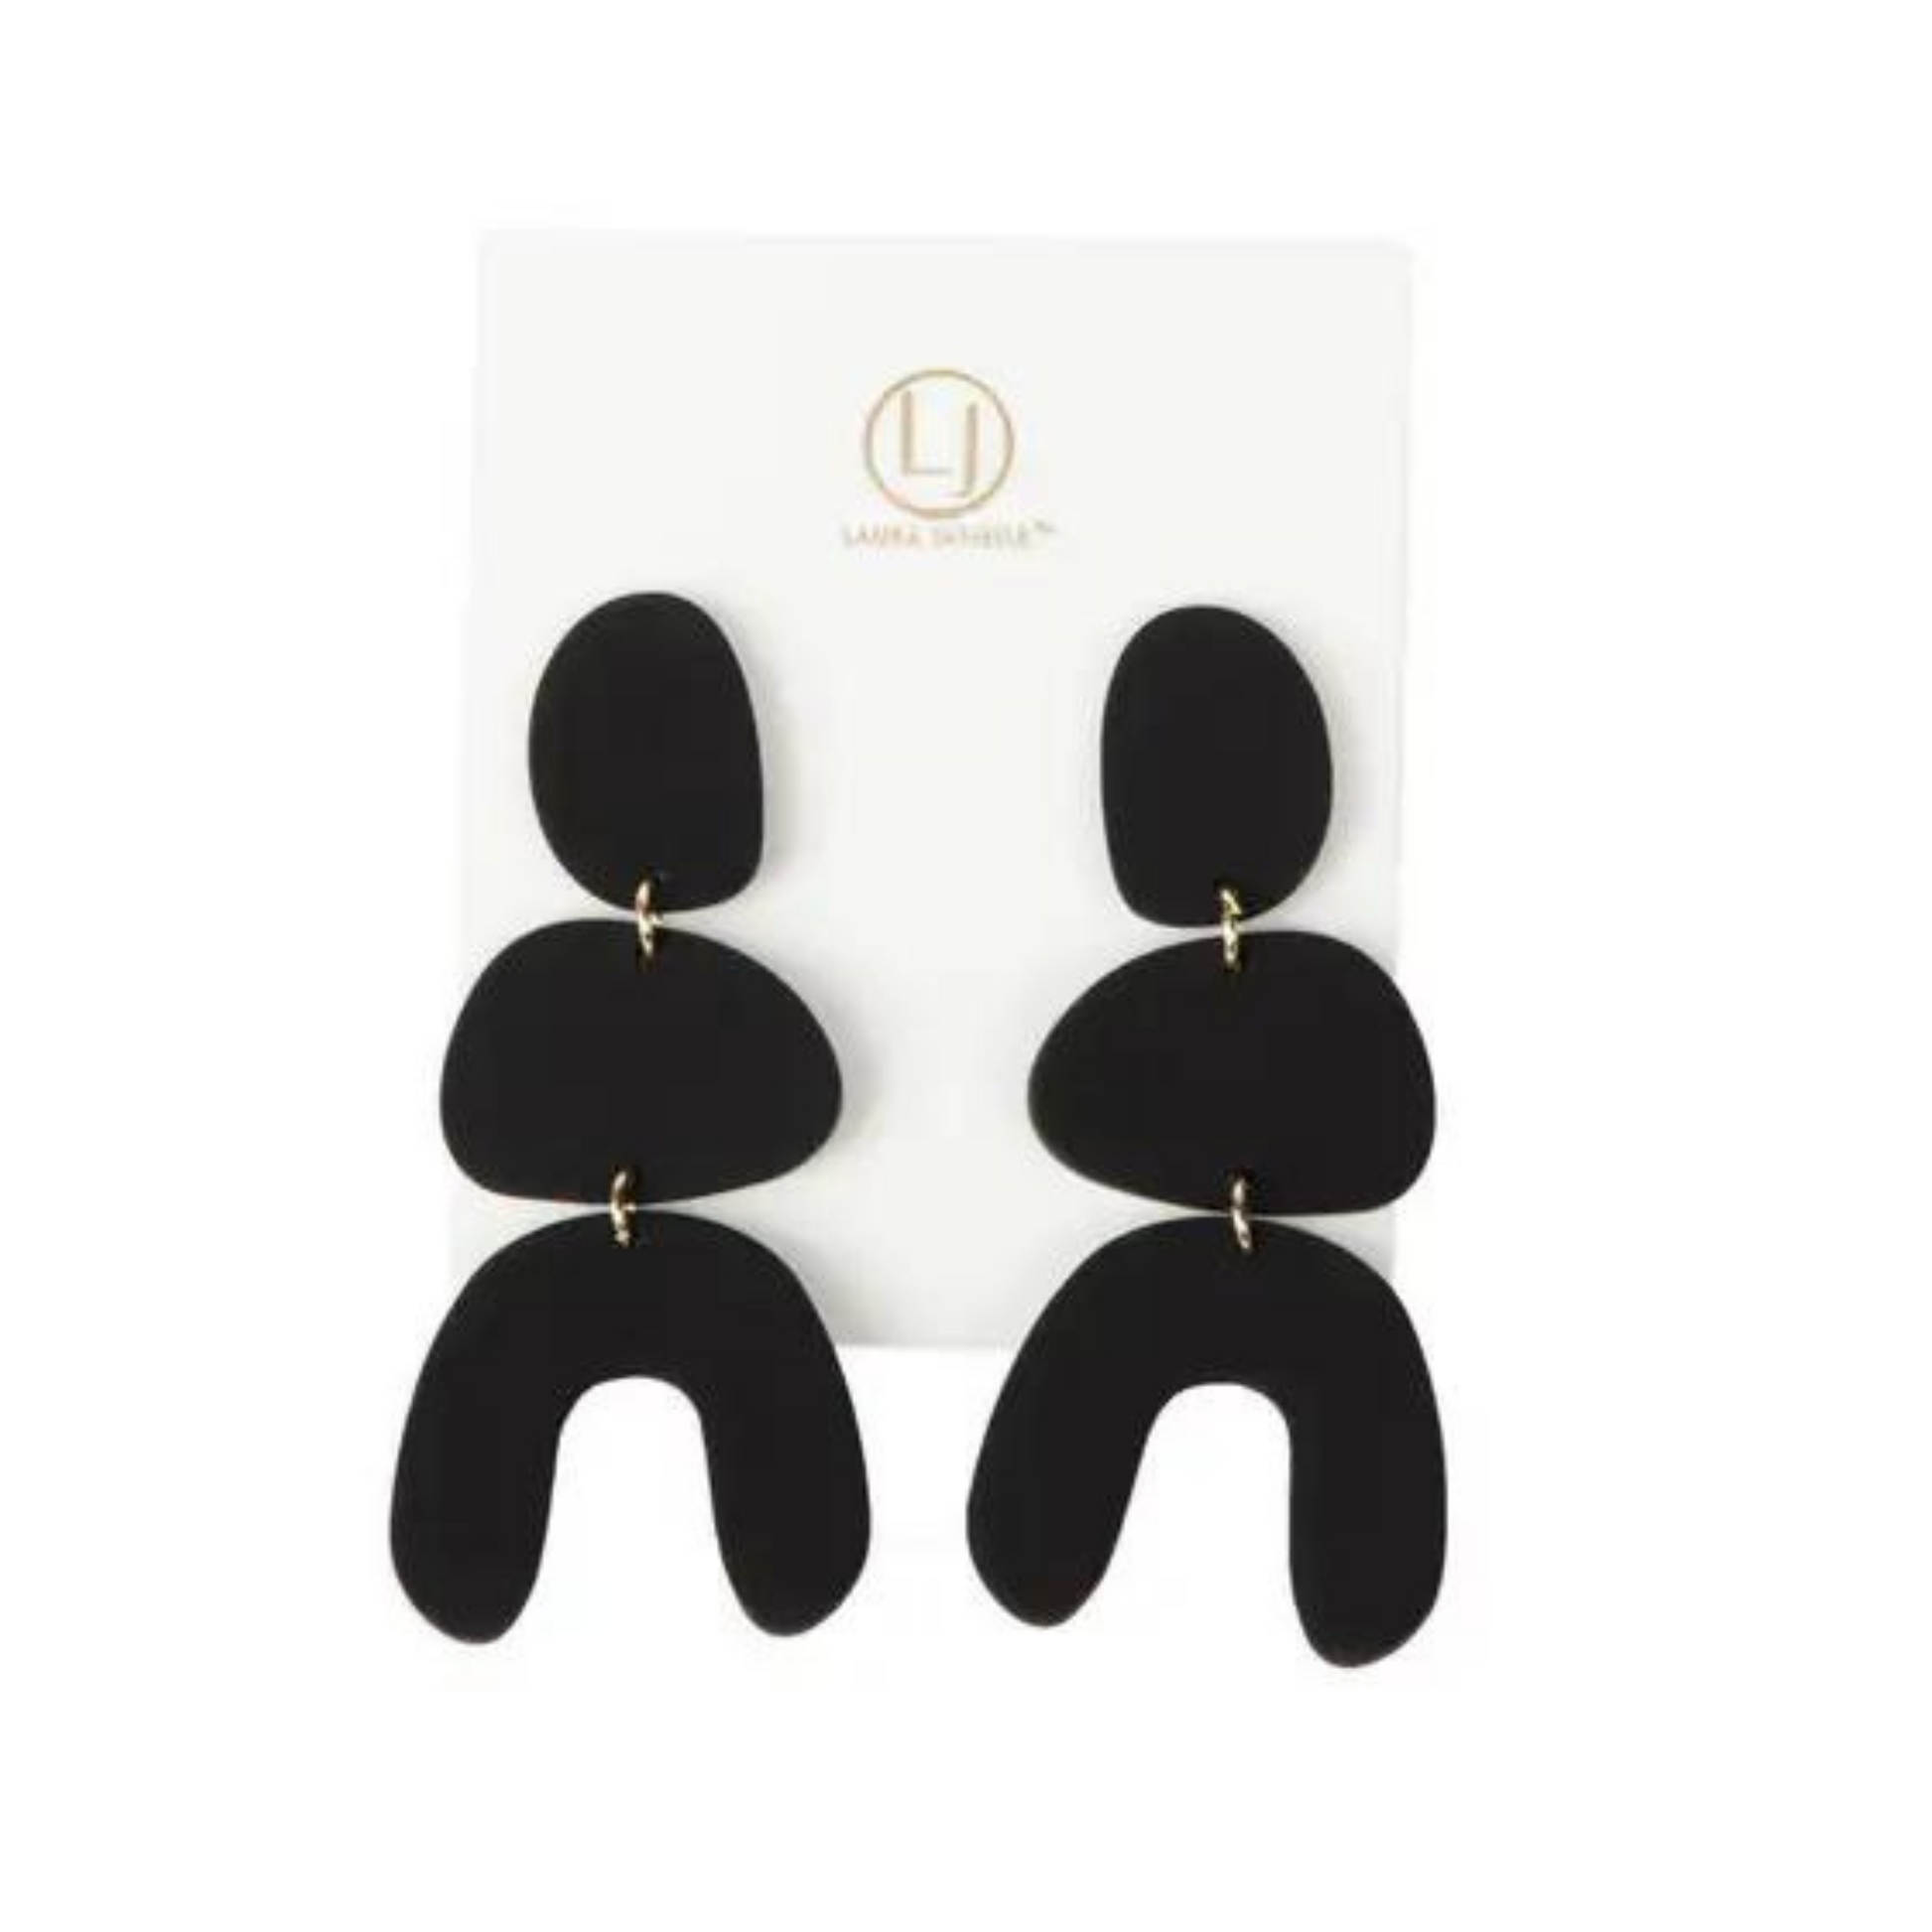 Clay arch dangle earrings in black